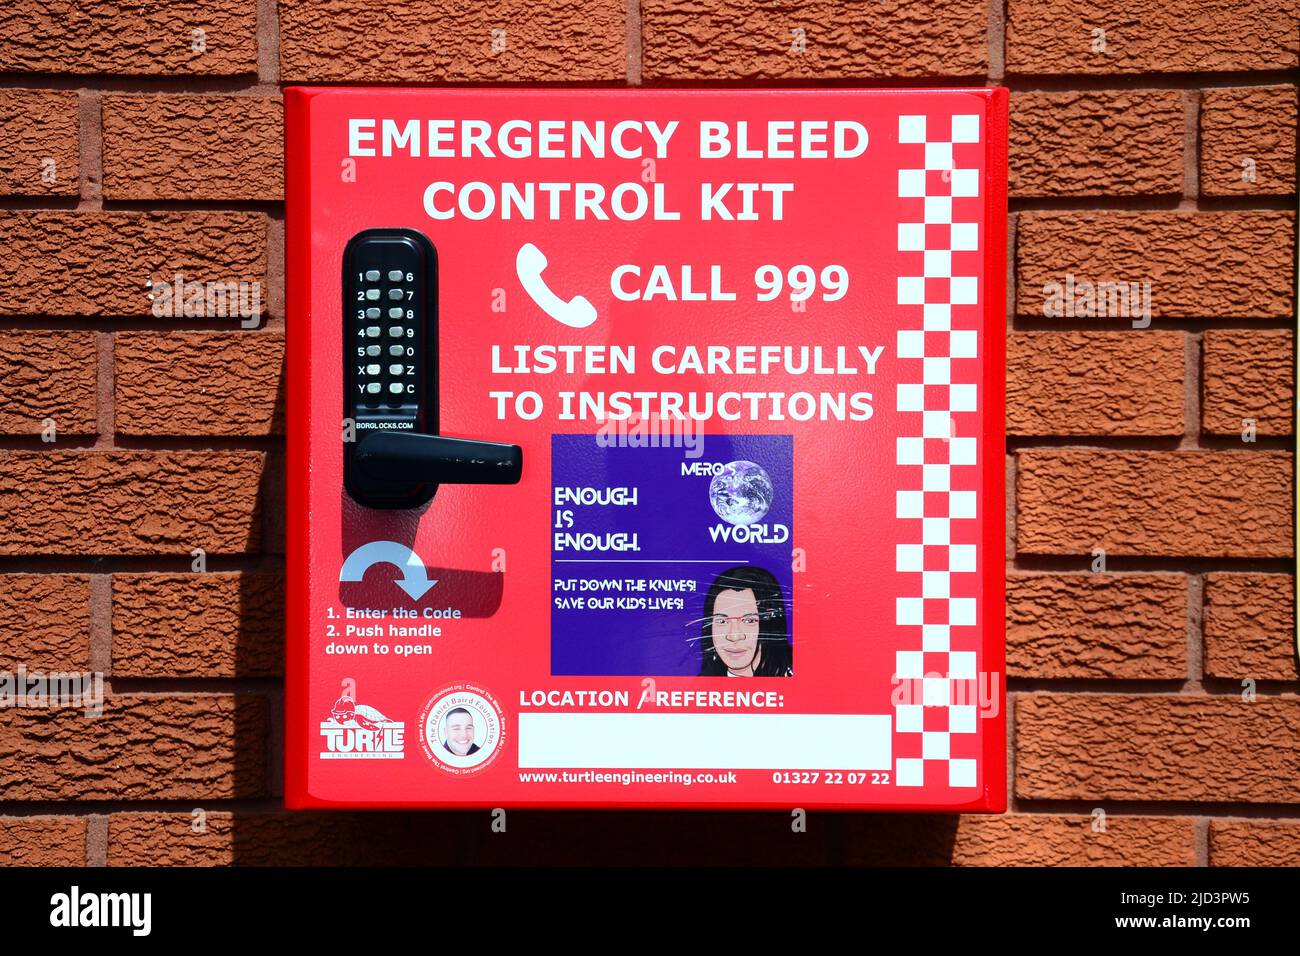 Notentlüftung-Kontrollkit, montiert in einem roten Kasten an einer Ziegelwand mit Anweisungen an der Vorderseite, um die Notrufleitung 999 in Manchester, England, Großbritannien, anzurufen. Stockfoto